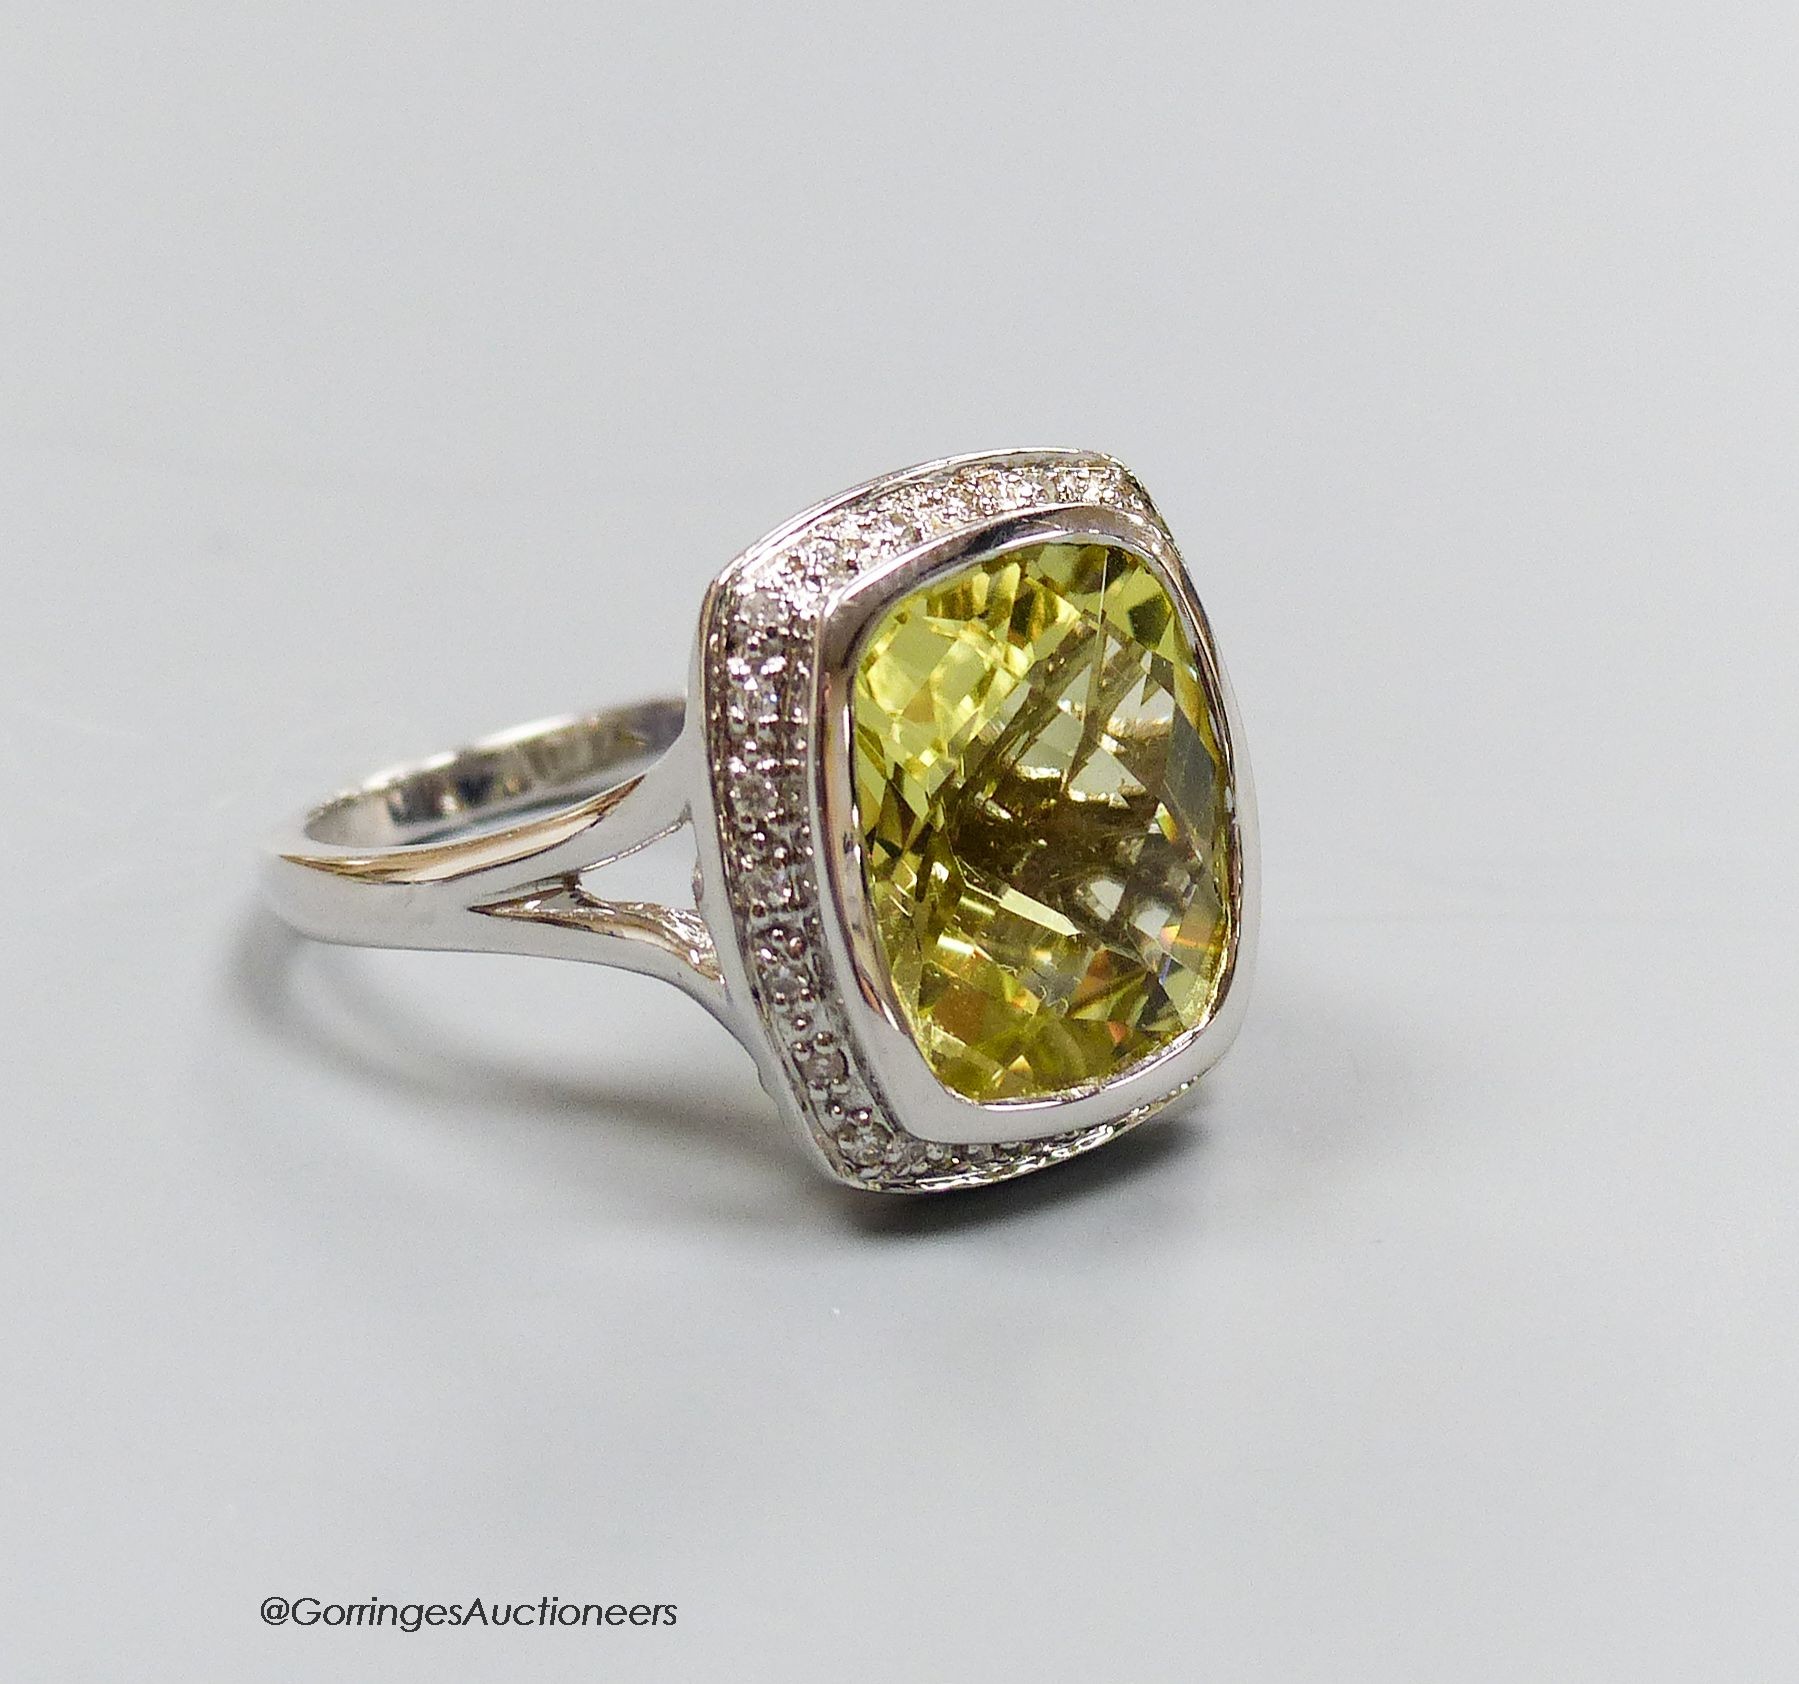 An 18ct white gold, diamond and lemon quartz cluster ring, size N, gross 7.3g.